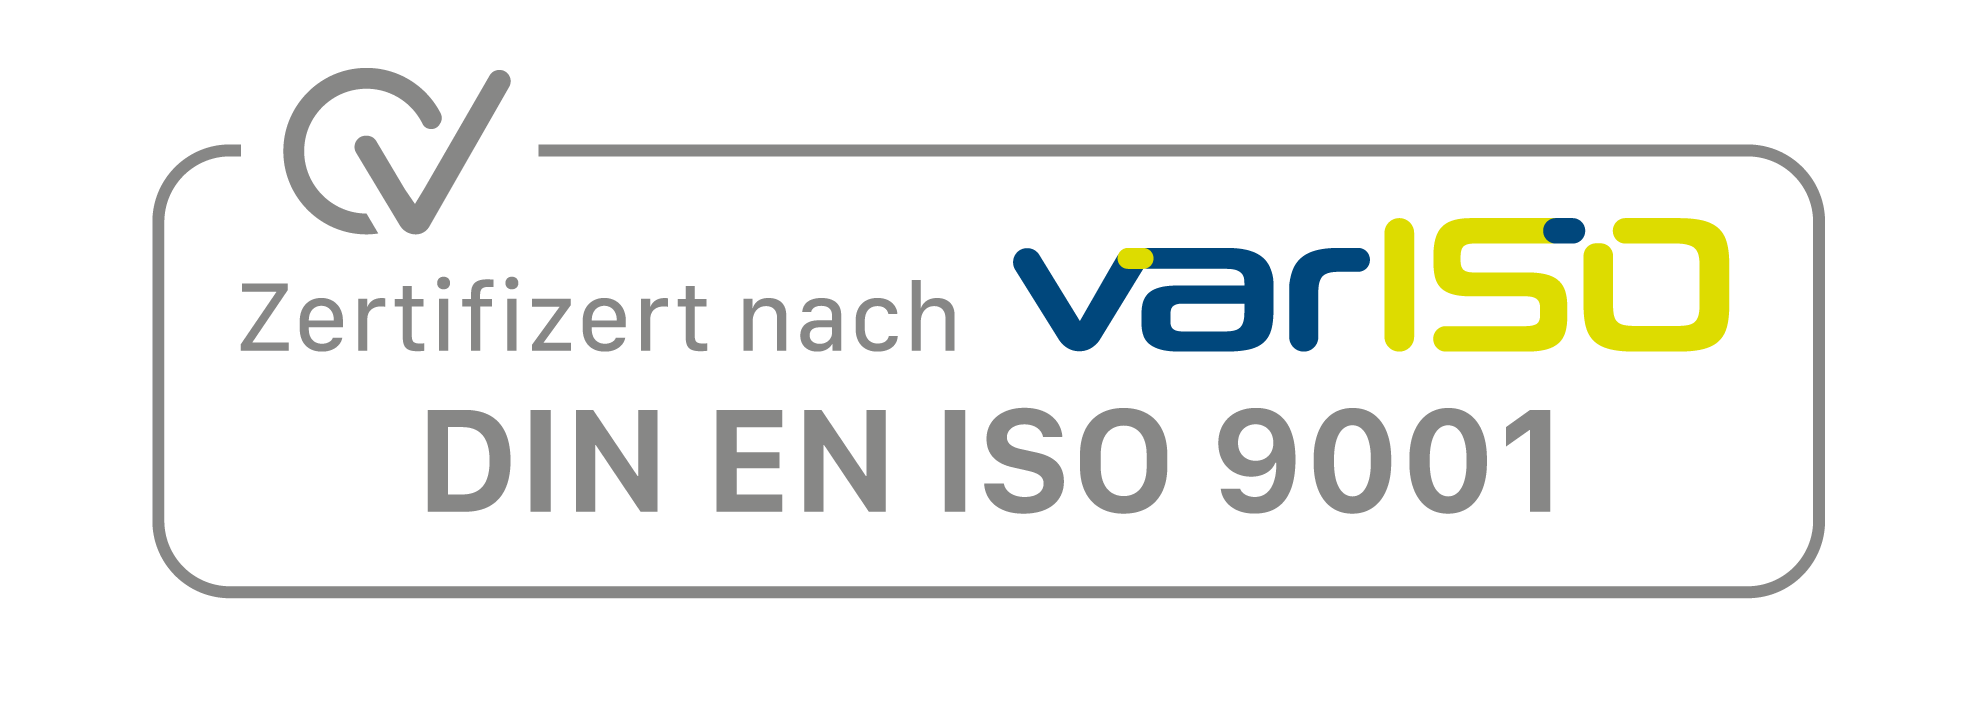 varISO-Siegel DIN EN ISO 9001